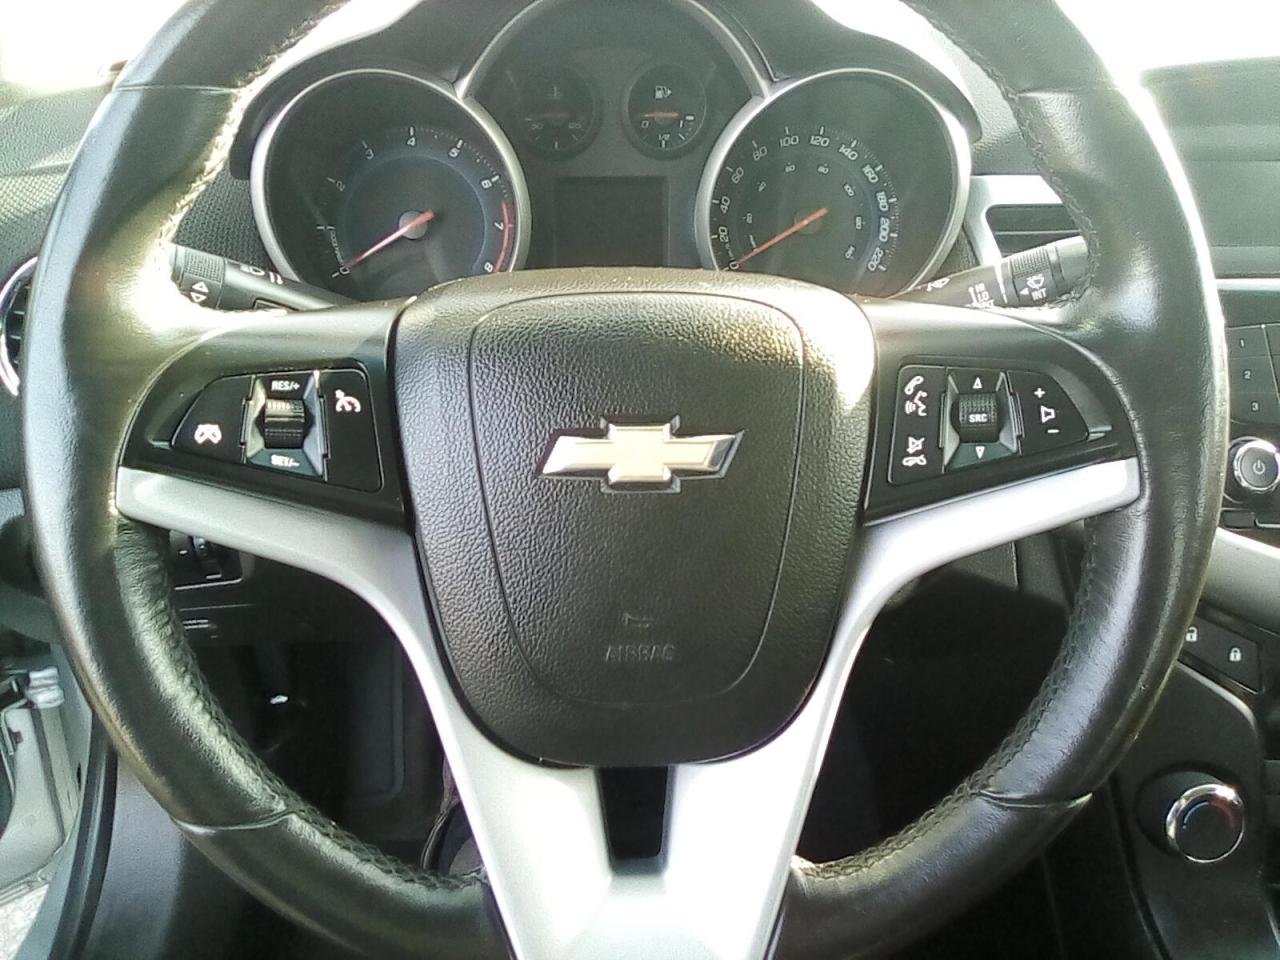 2014 Chevrolet Cruze 1LT Auto